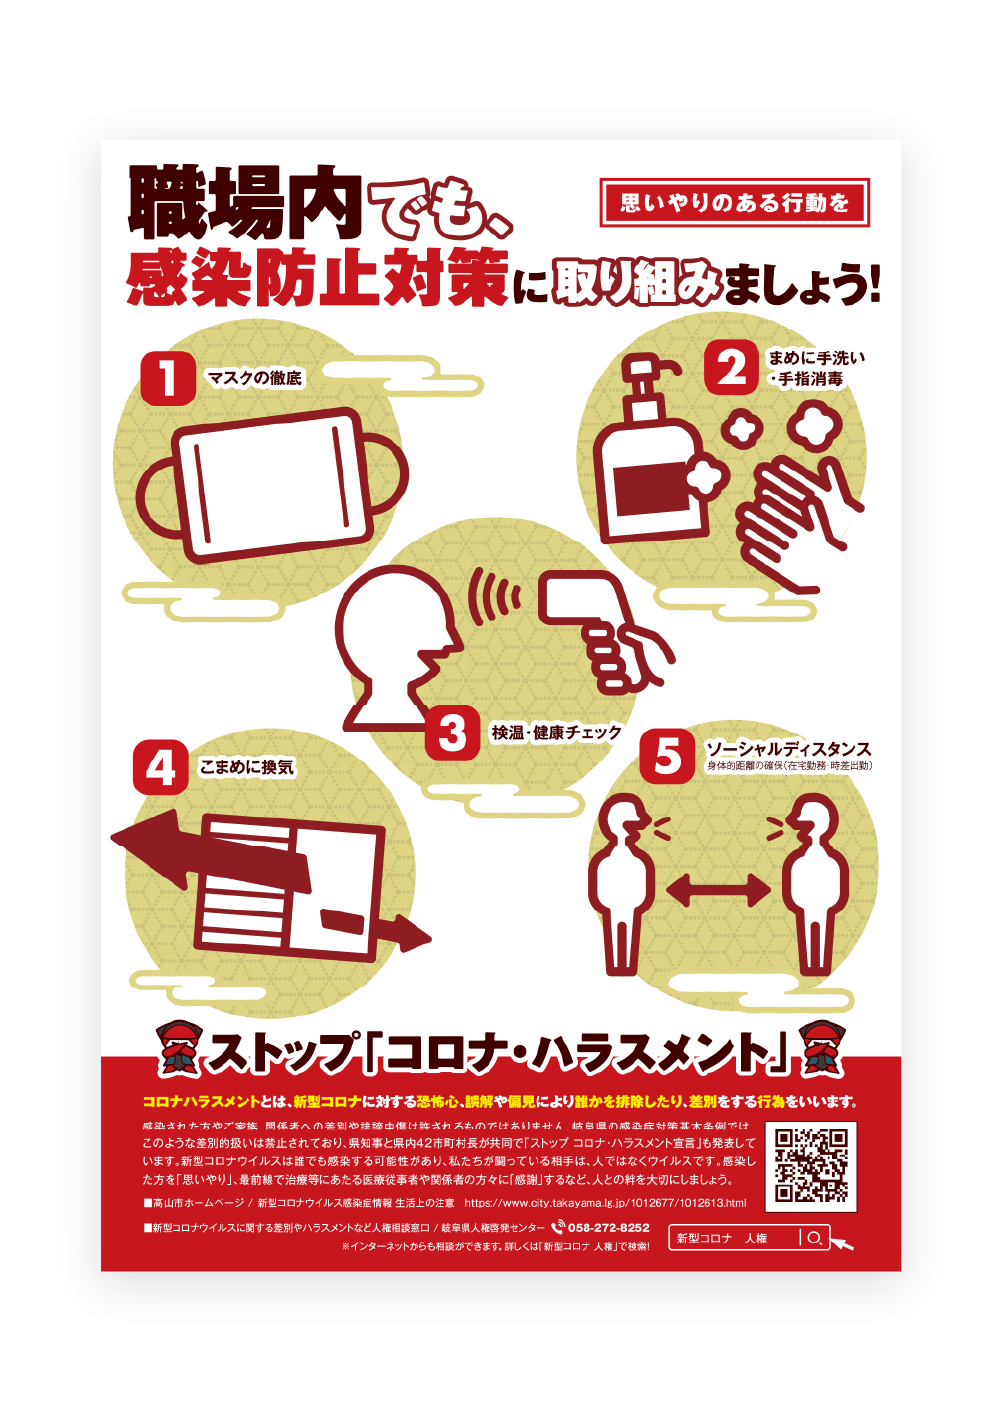 高山市 コロナ対策｜ポスターデザイン